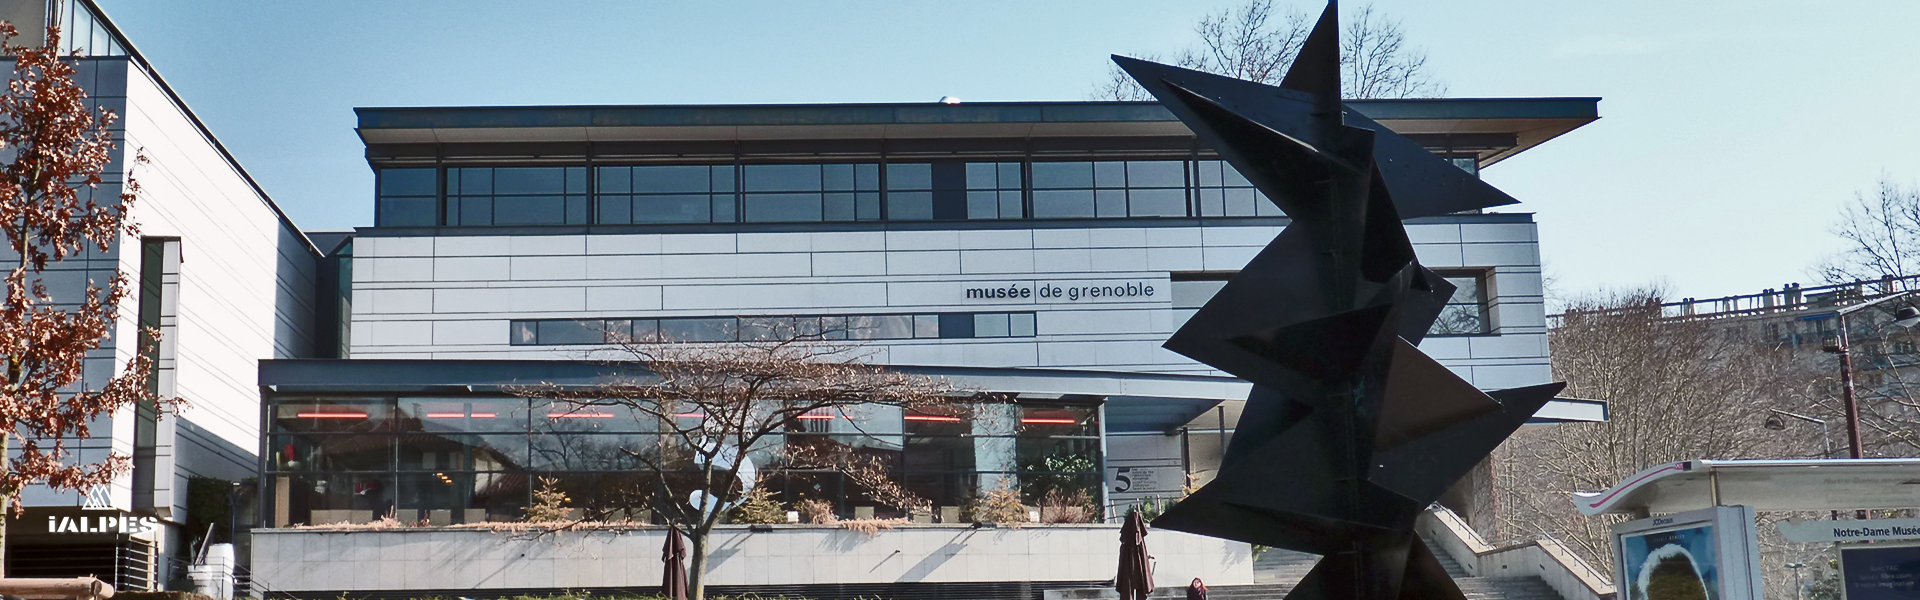 Musée de Grenoble, Isère